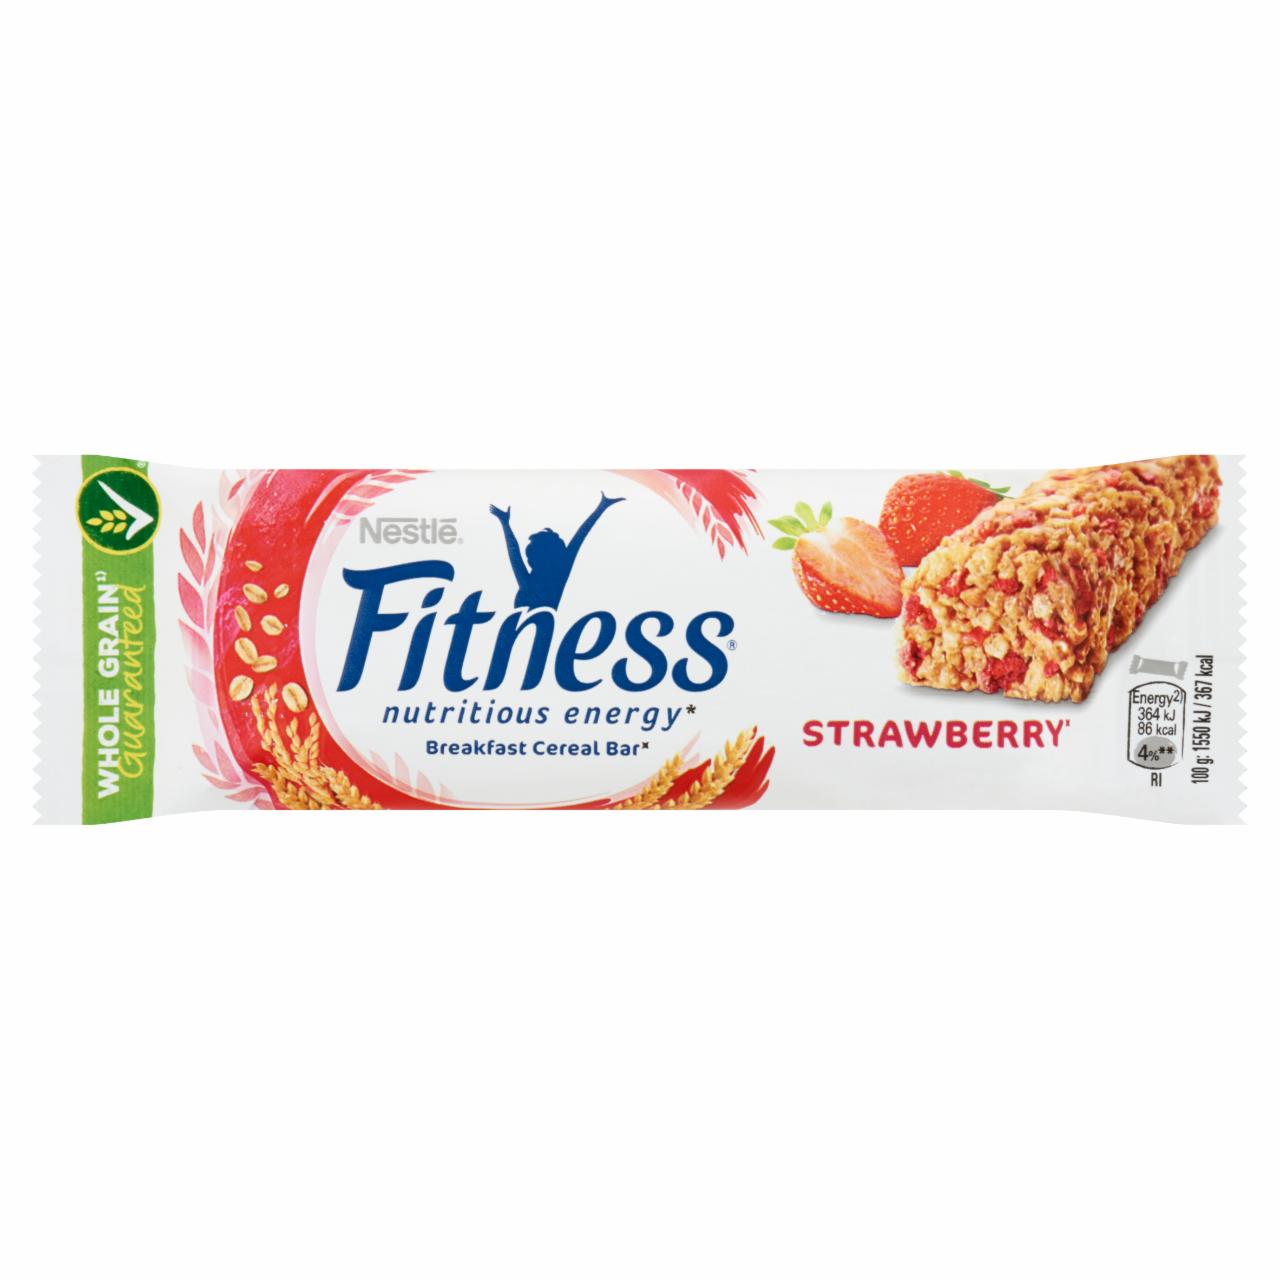 Képek - Nestlé Fitness epres gabonapehely-szelet vitaminokkal és ásványi anyagokkal reggelihez 23,5 g